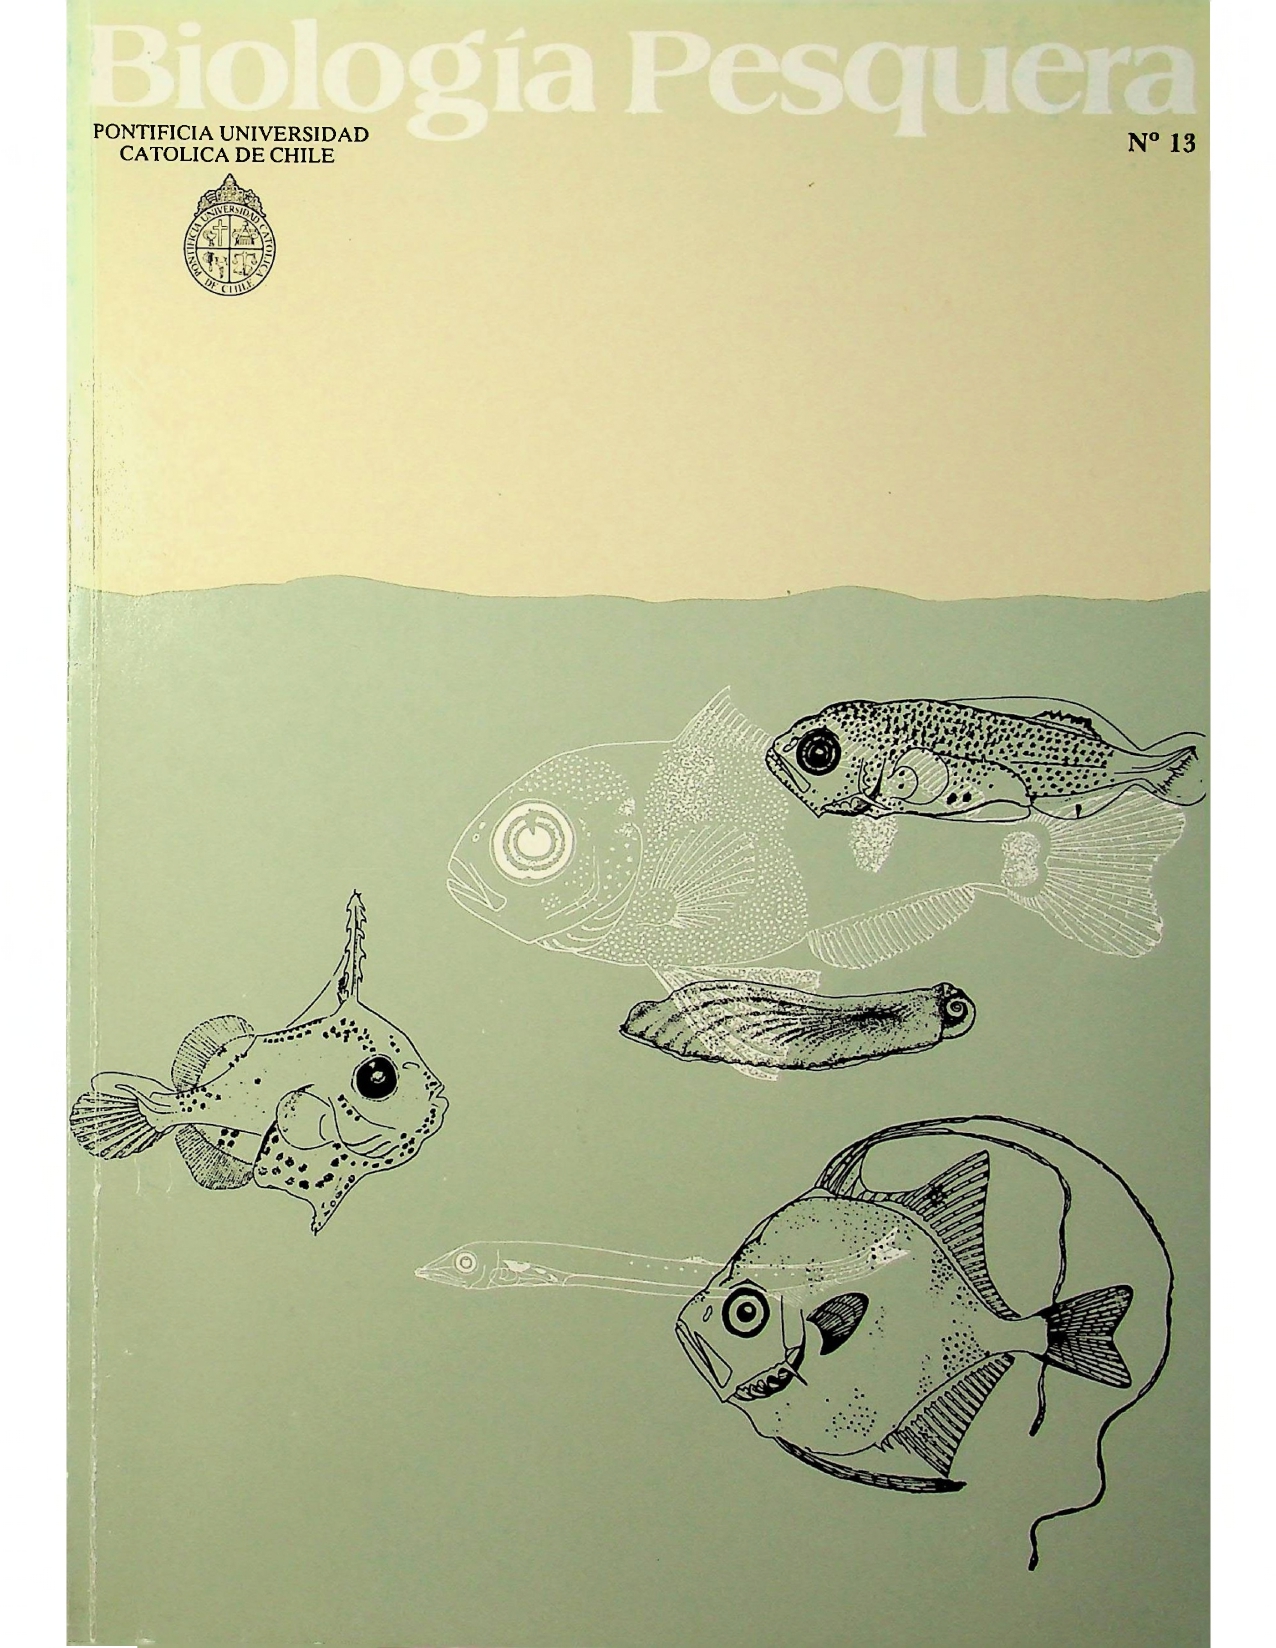 					View No. 13 (1984): Biología Pesquera
				